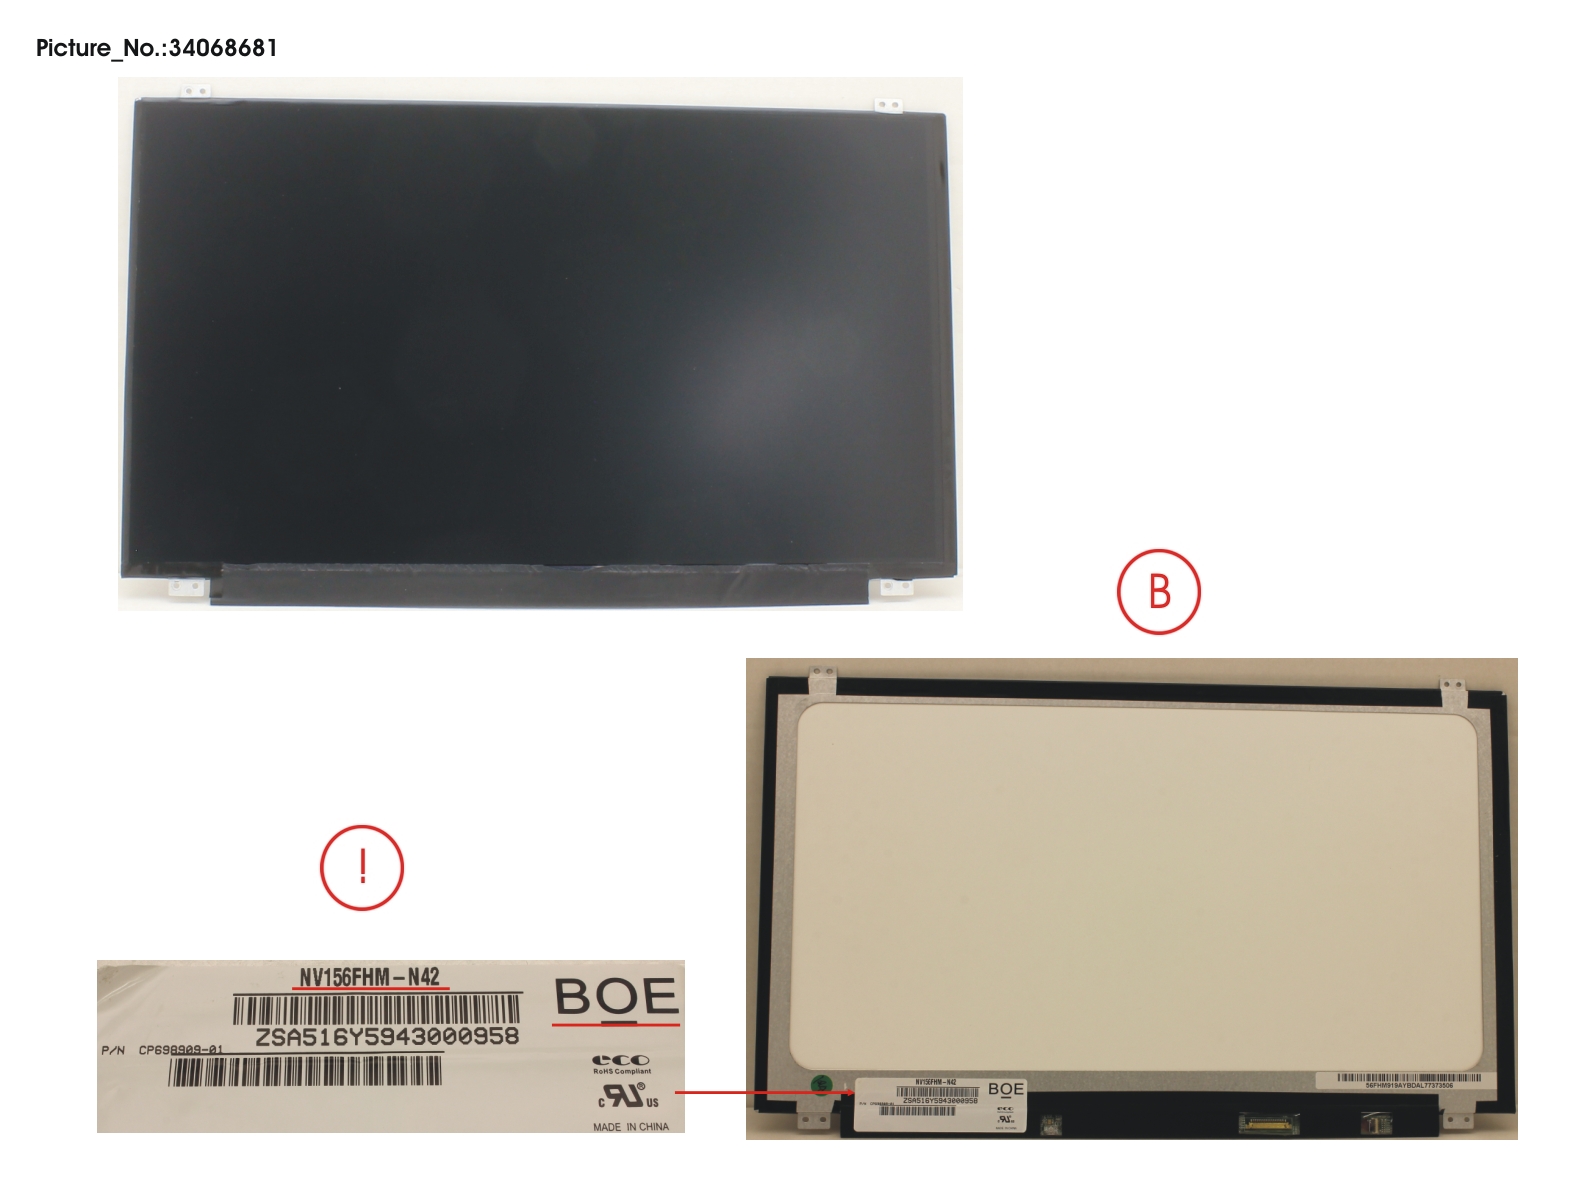 FUJITSU LCD PANEL BOE AG,NV156FHM-N42V8(EDP,FHD)